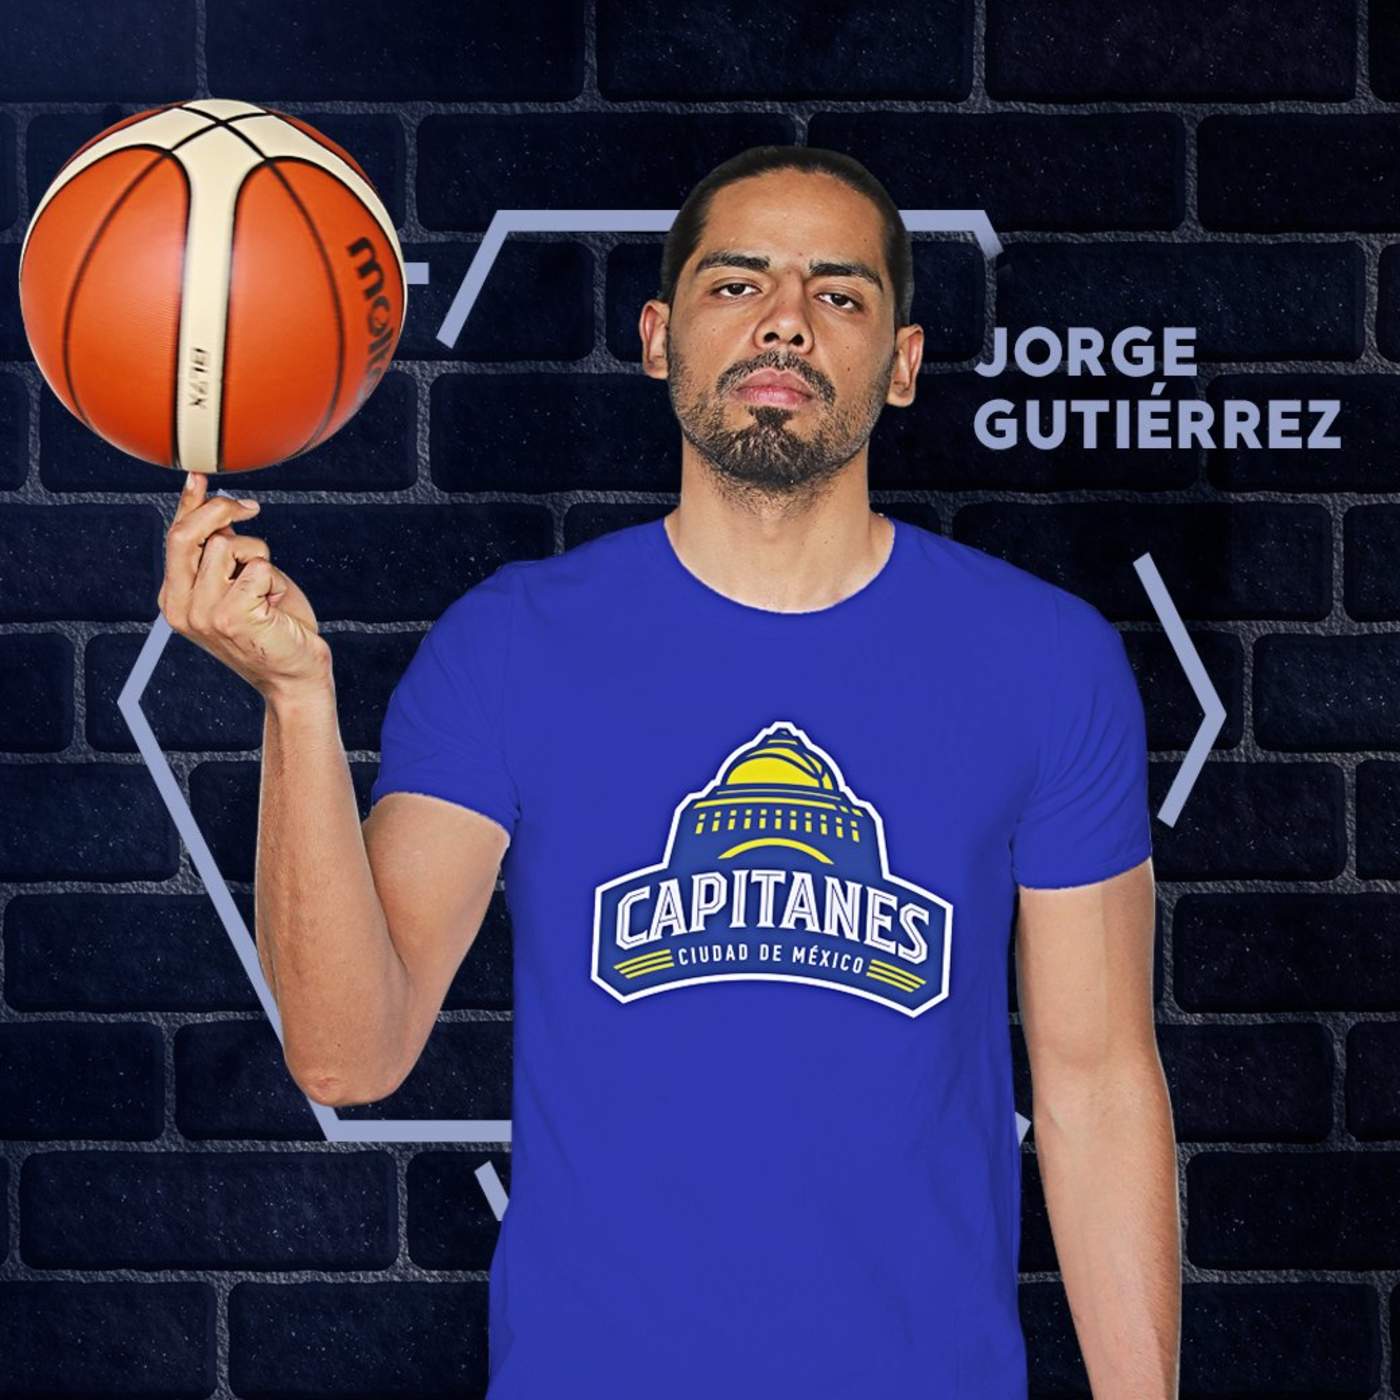 El último equipo en el que Gutiérrez militó, fue el Gipuzkoa de España, dirigido por Sergio Valdeolmillos, donde promedió 6.6 puntos 1.9 rebotes y 2.5 asistencias. (Especial)